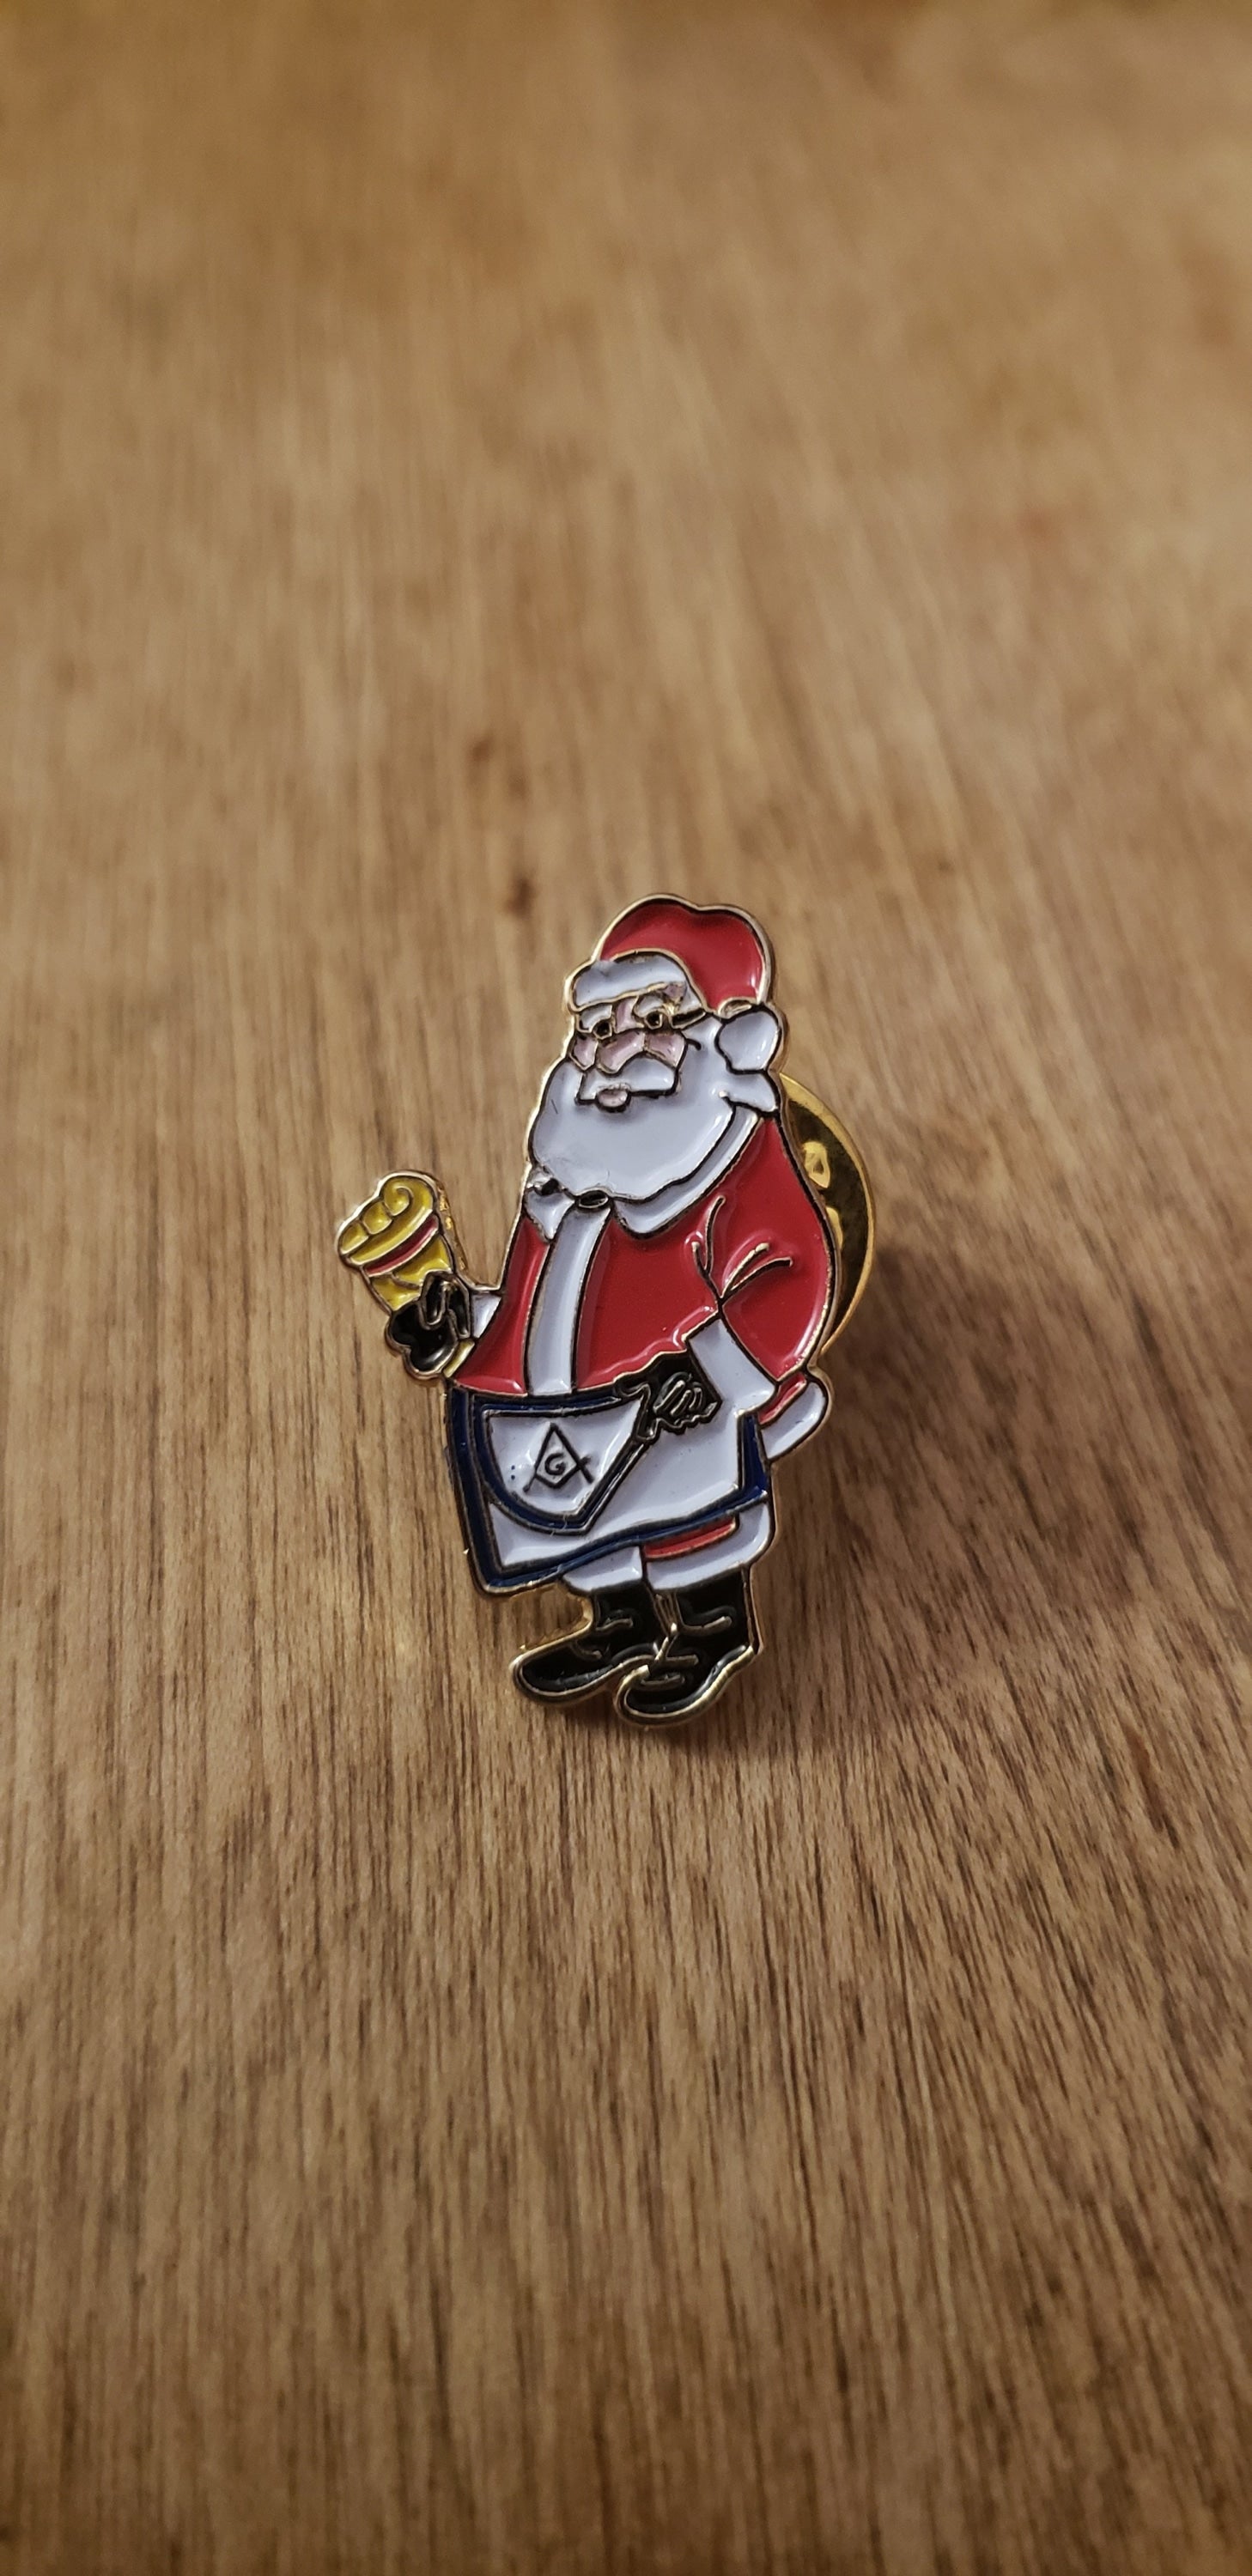 Masonic Santa Claus Pin